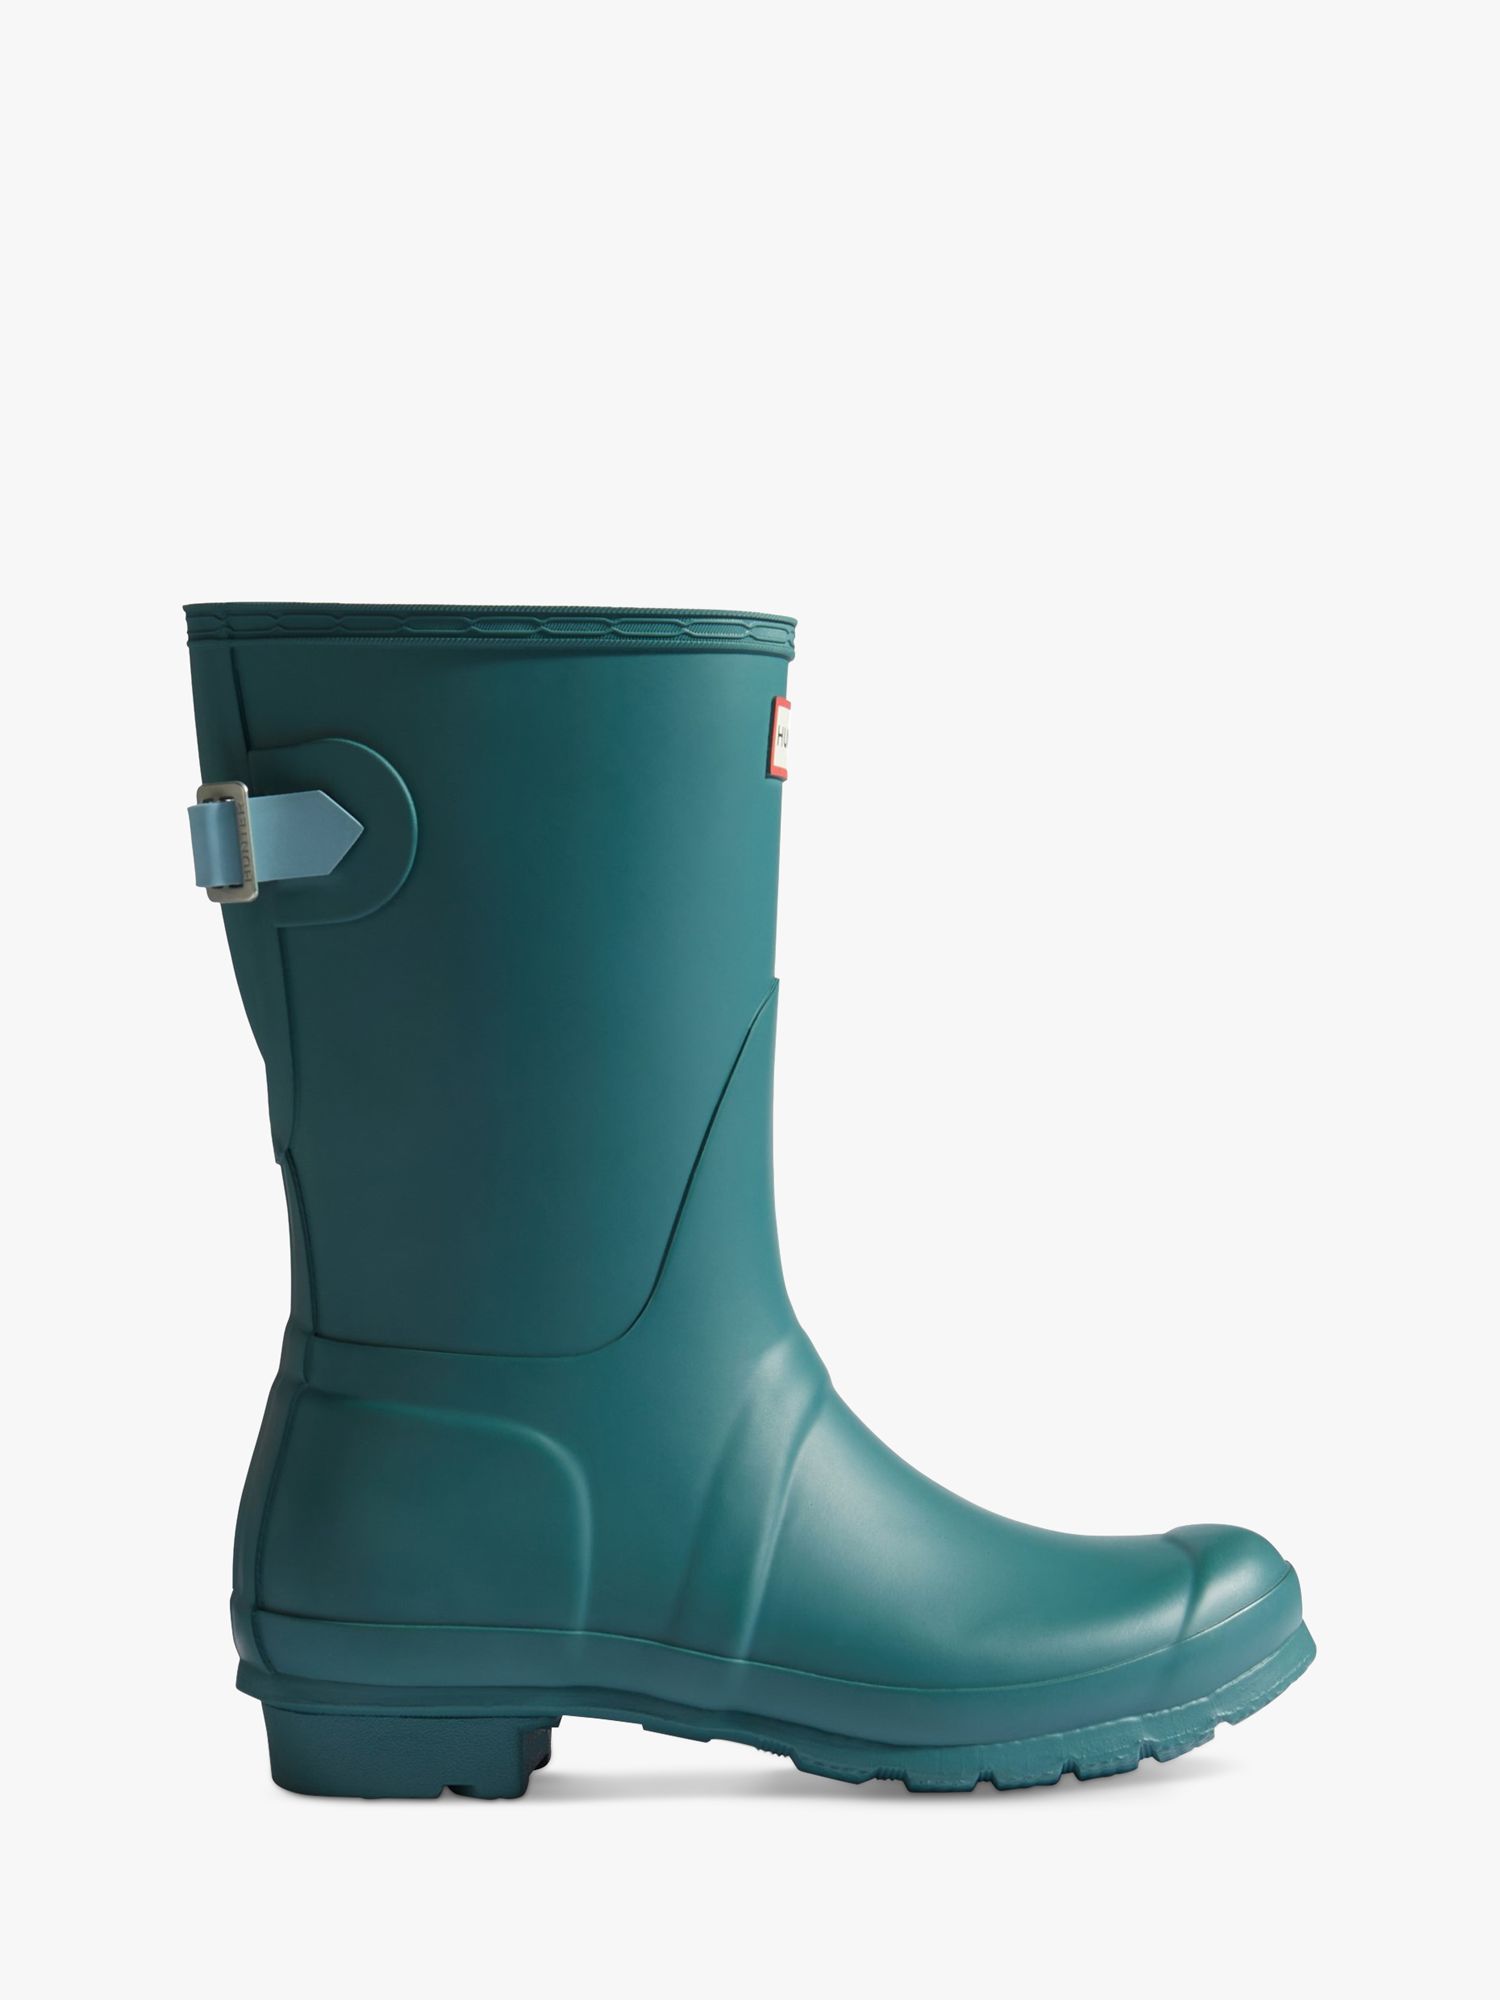 Hunter Short Adjustable Back Wellington Boots at John Lewis & Partners